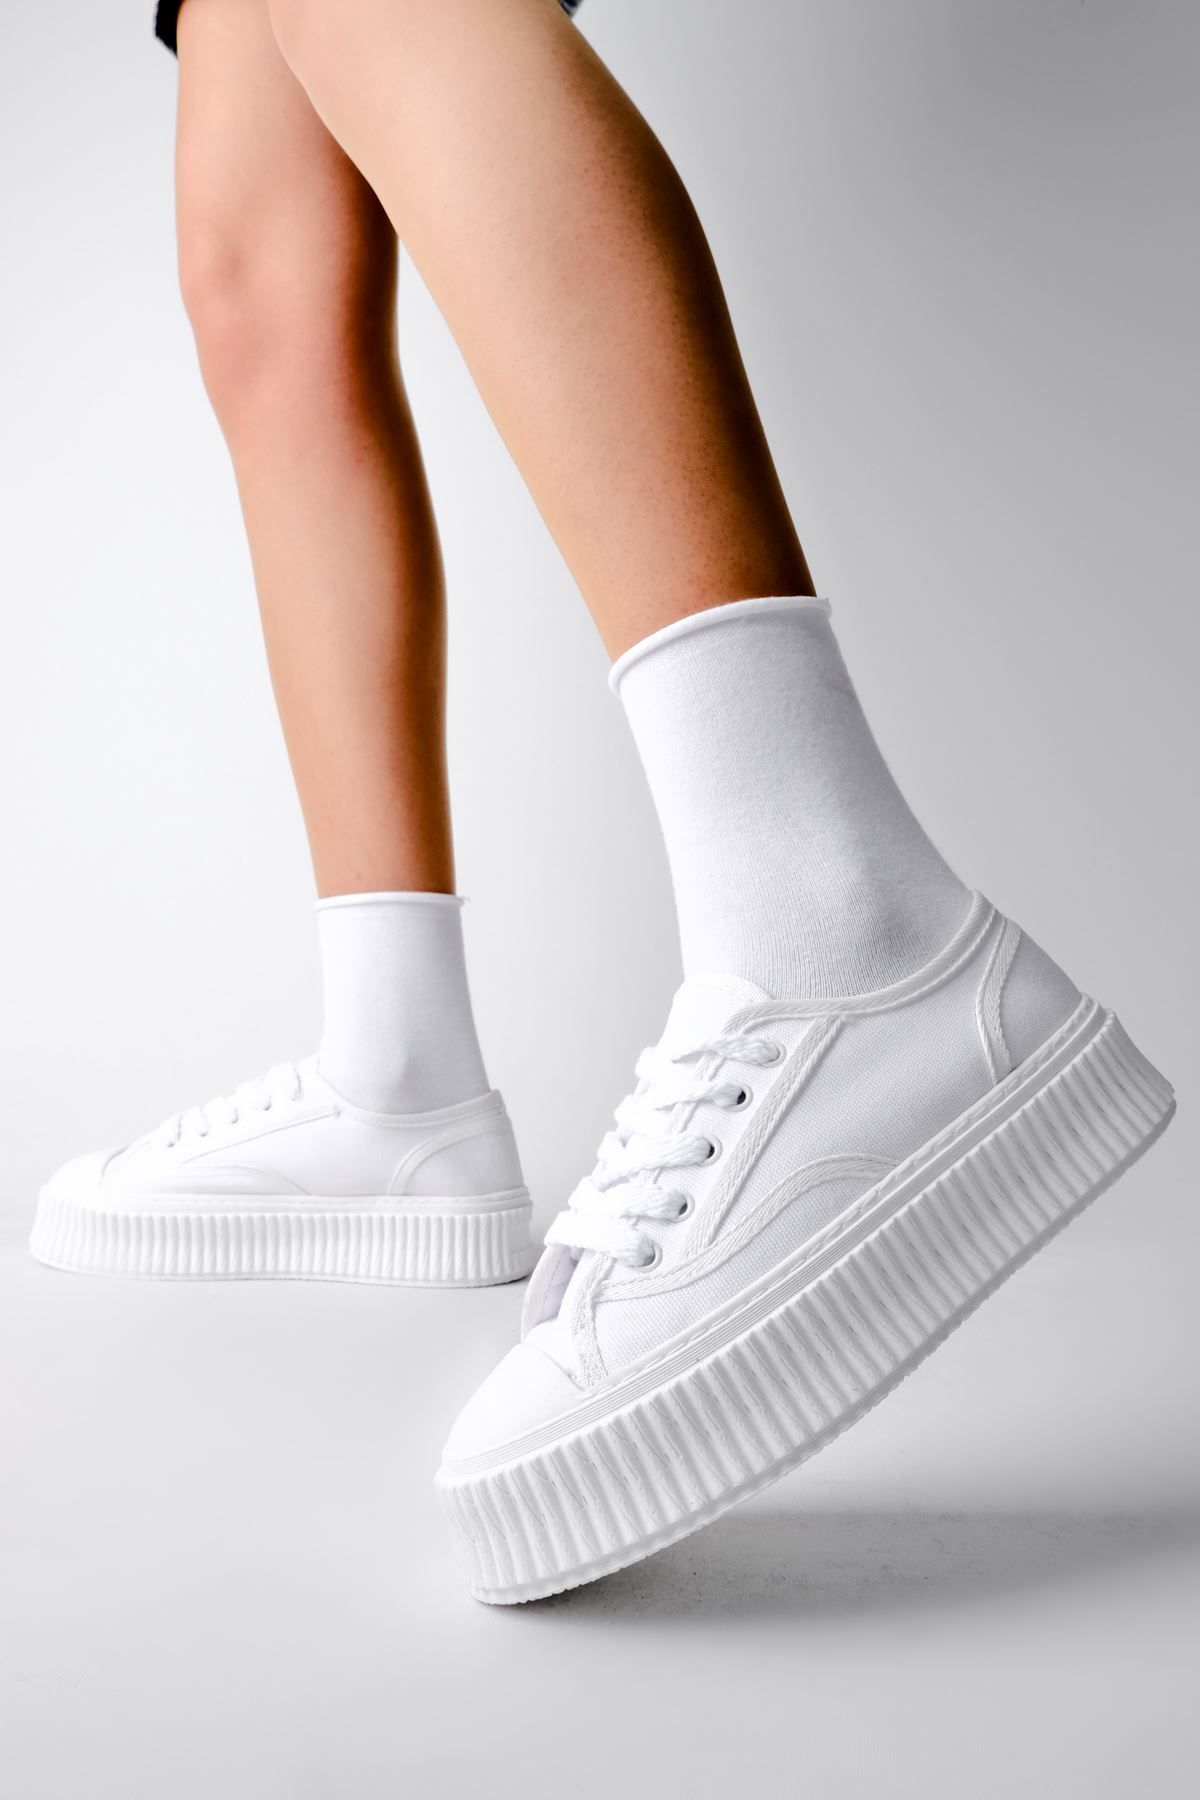 LAL SHOES & BAGS Damian Yüksek Taban Bez Kadın Spor Ayakkabı-beyaz